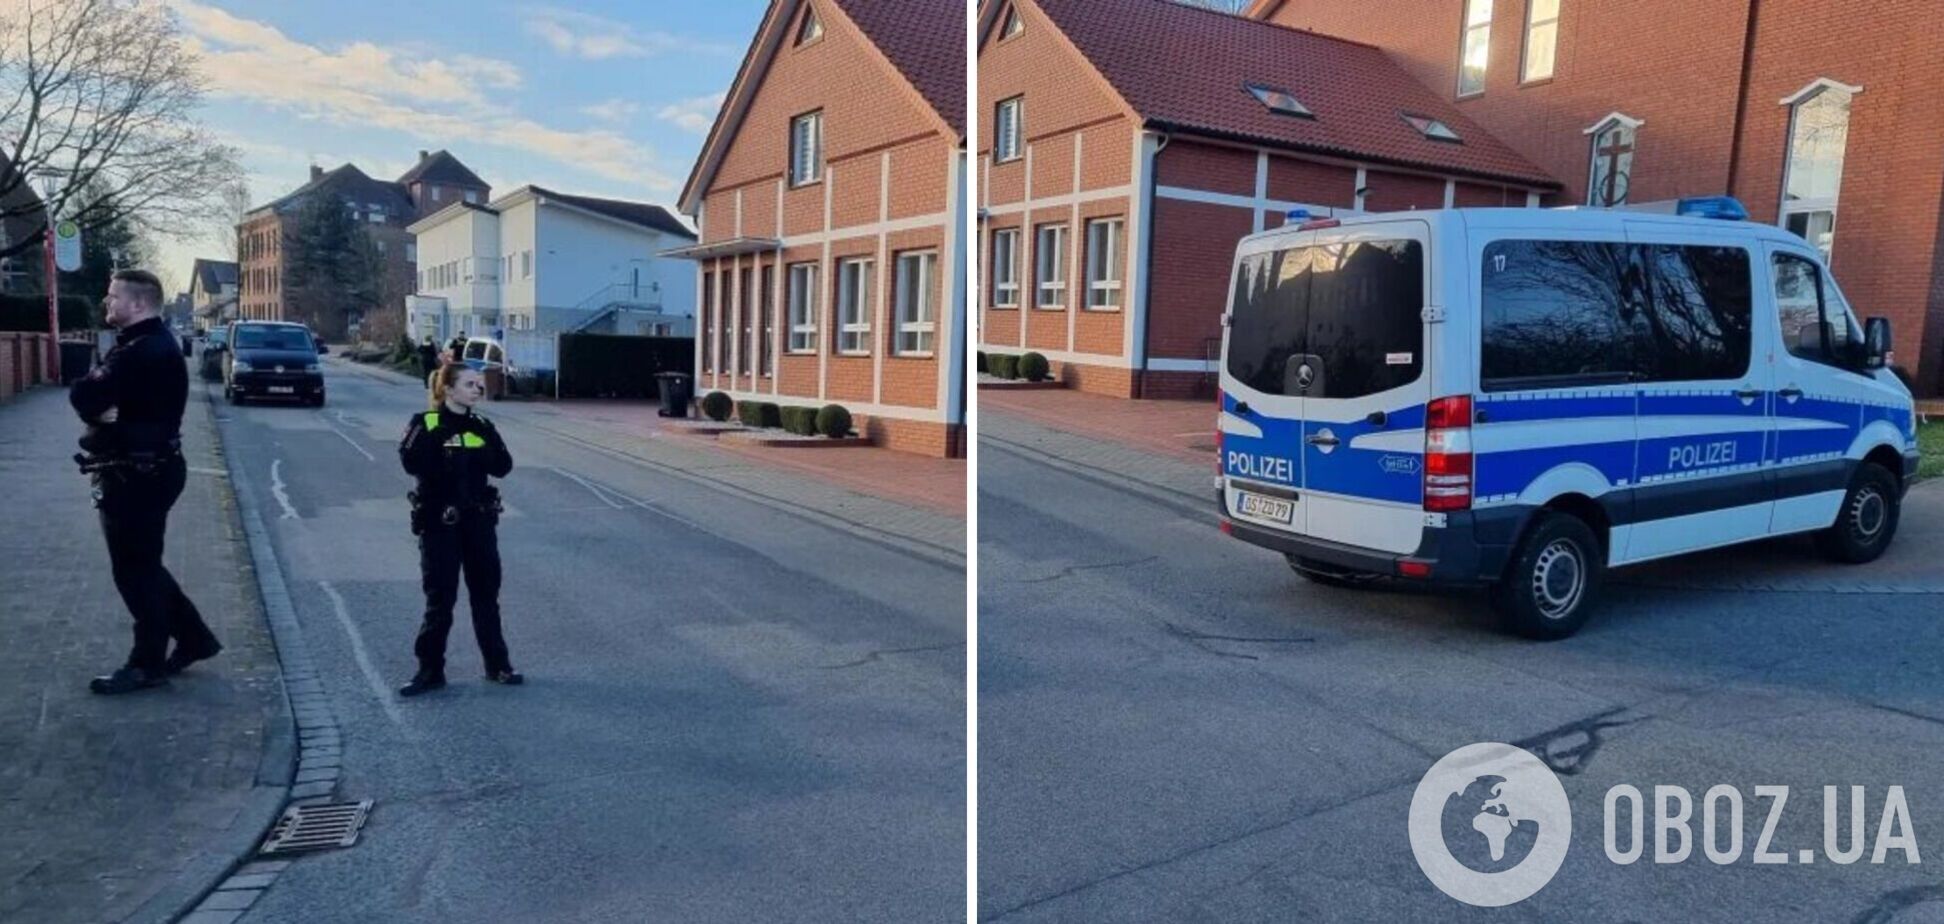 В Германии произошла стрельба возле школы, есть раненые: появились подробности